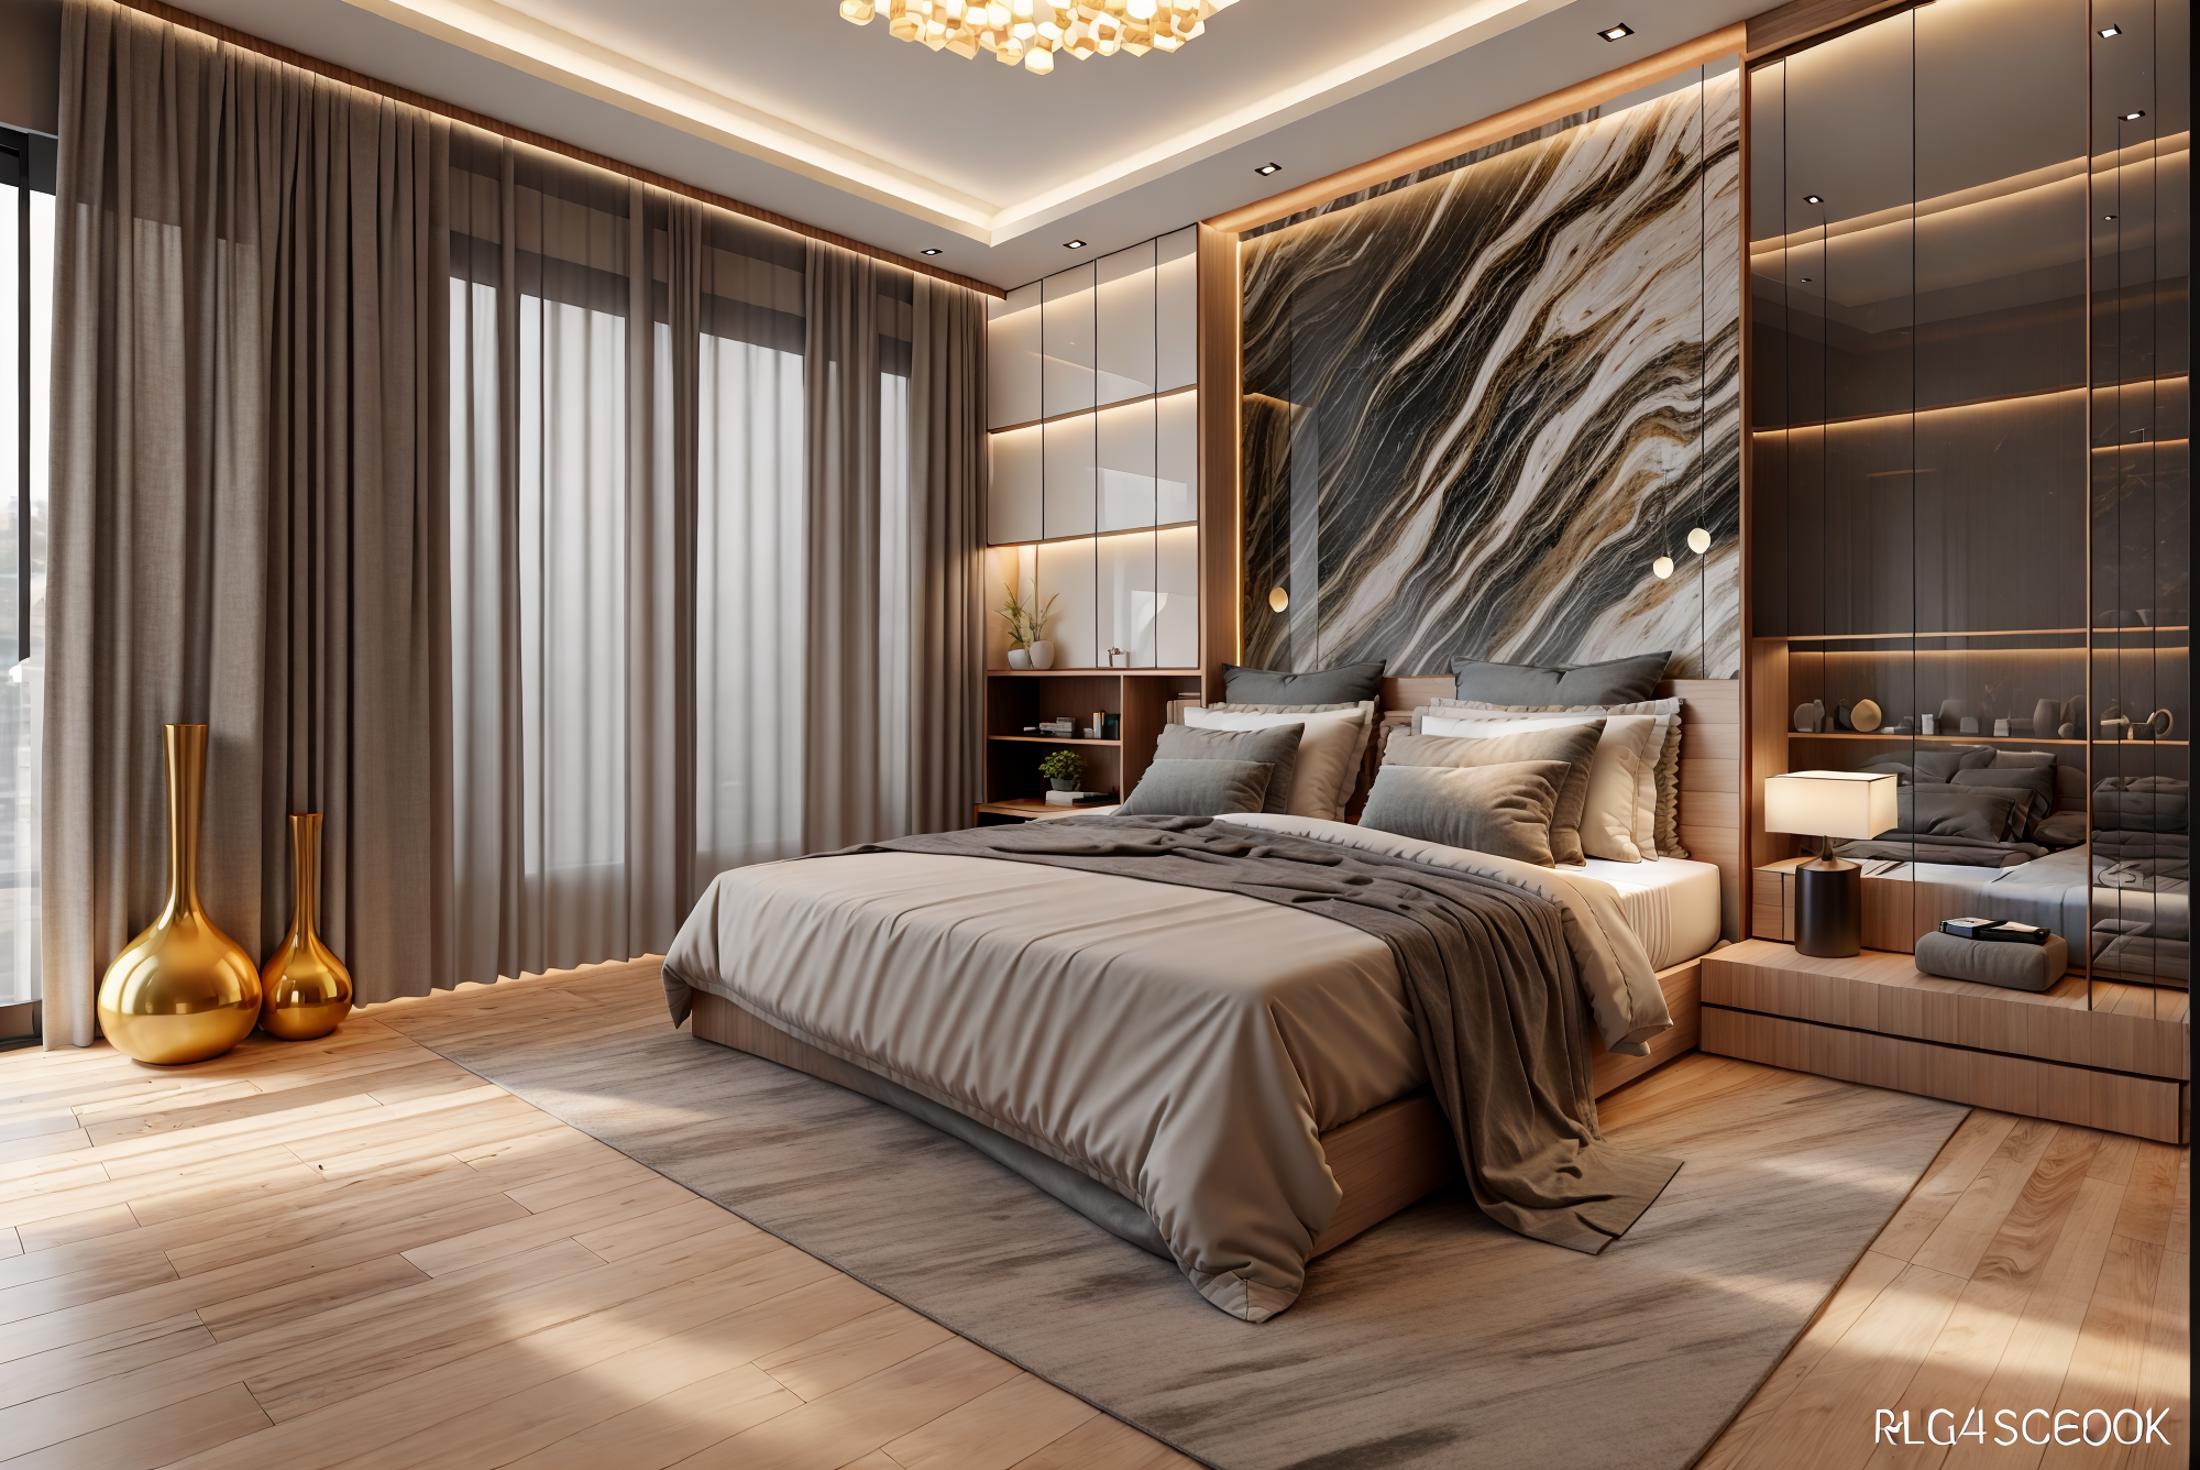 Modern luxury bedroom image by Hakhoa0901